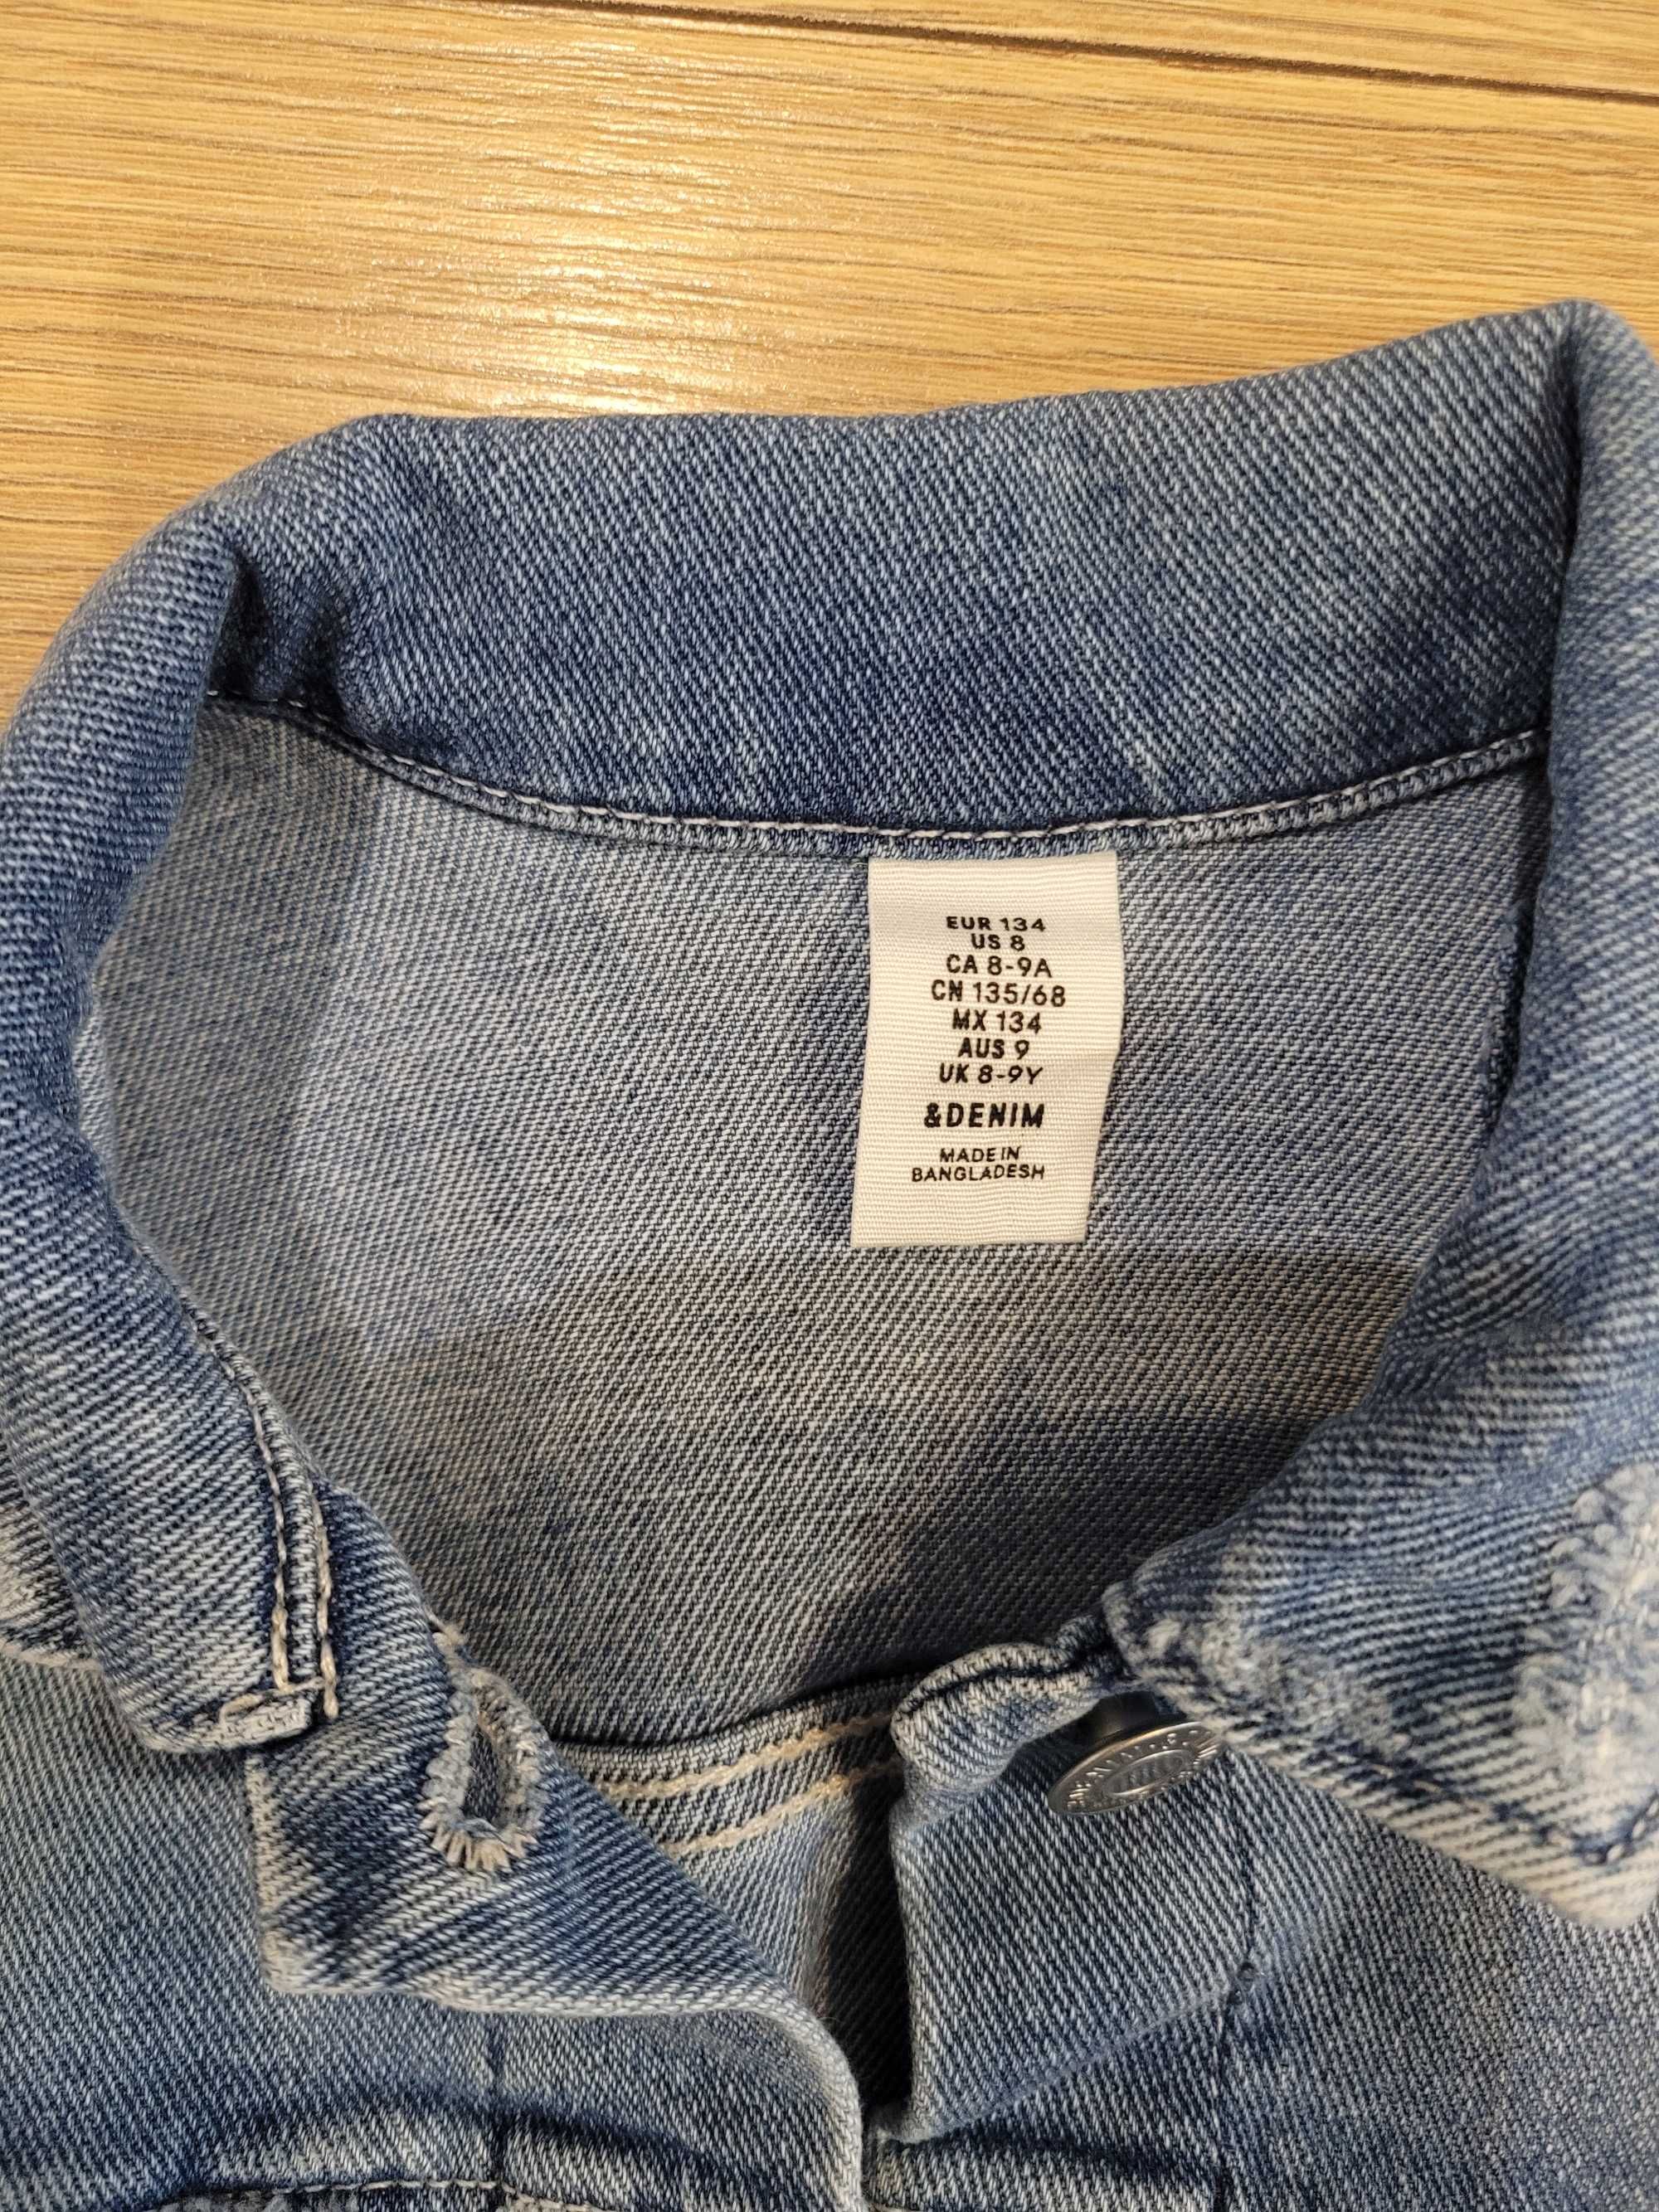 Kurtka jeansowa H&M roz. 134